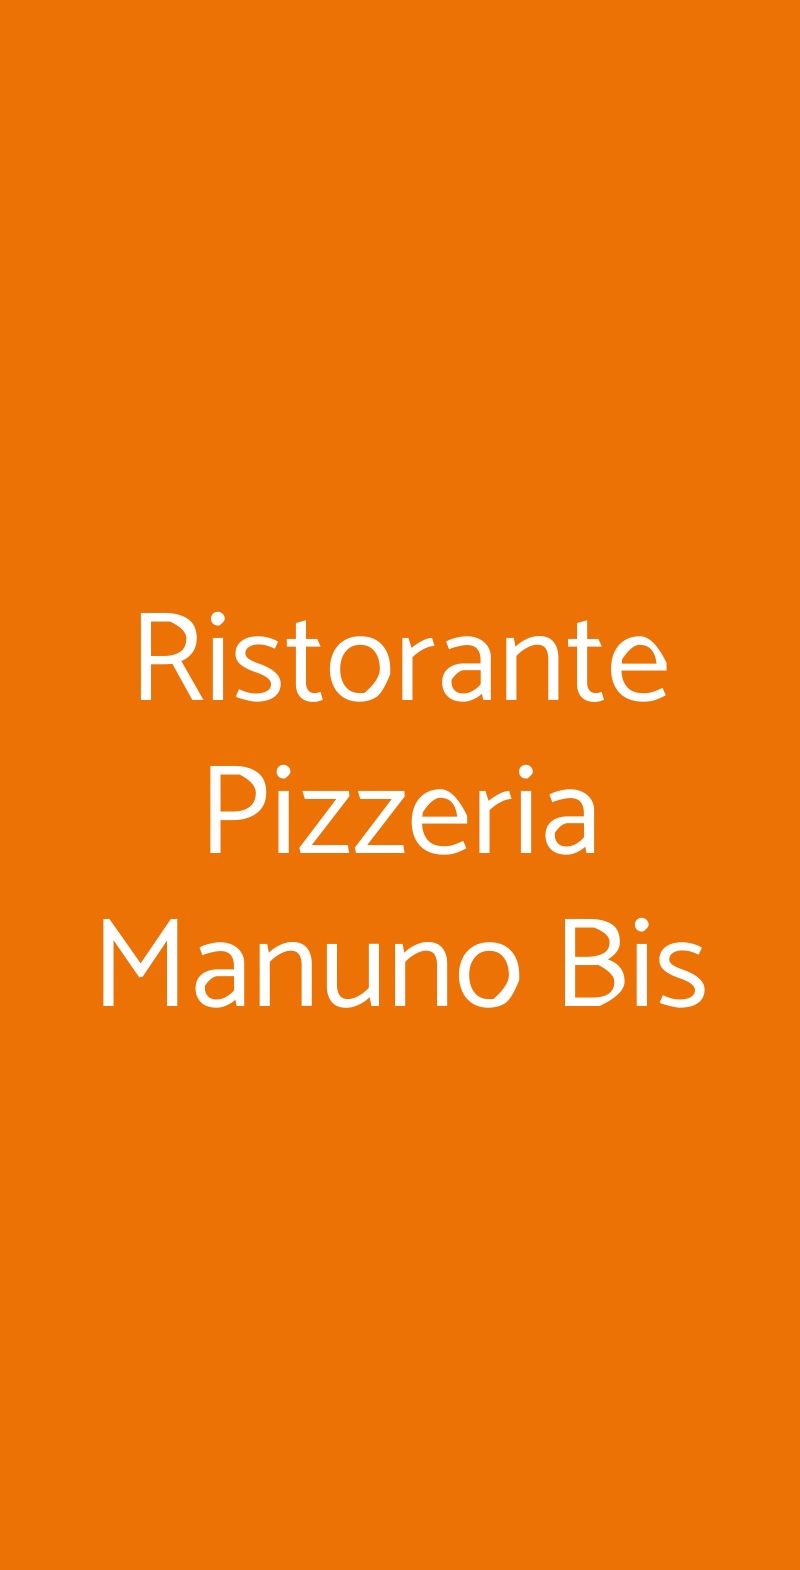 Ristorante Pizzeria Manuno Bis Brescia menù 1 pagina